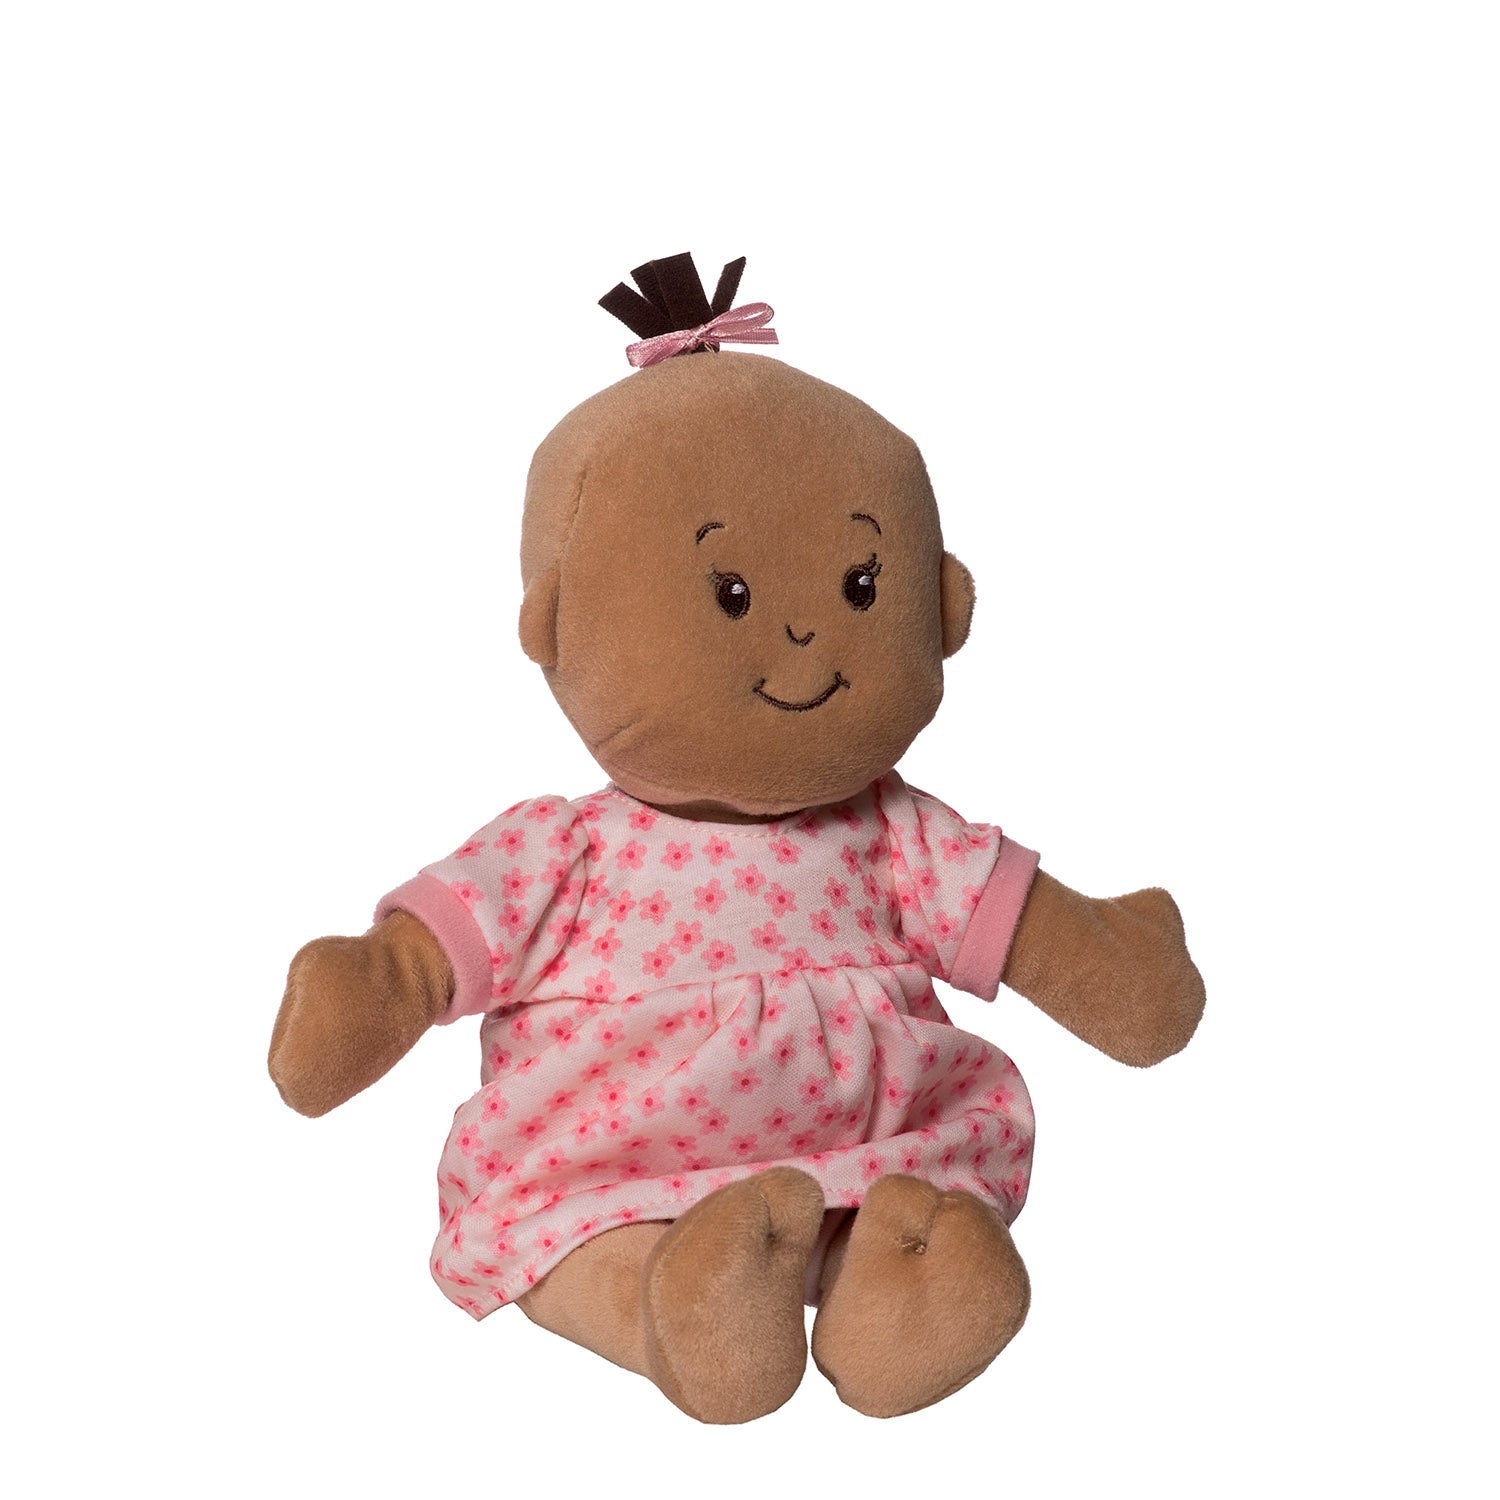 Manhattan Toy Wee Baby Stella Doll Beige with Brown Hair Dolls